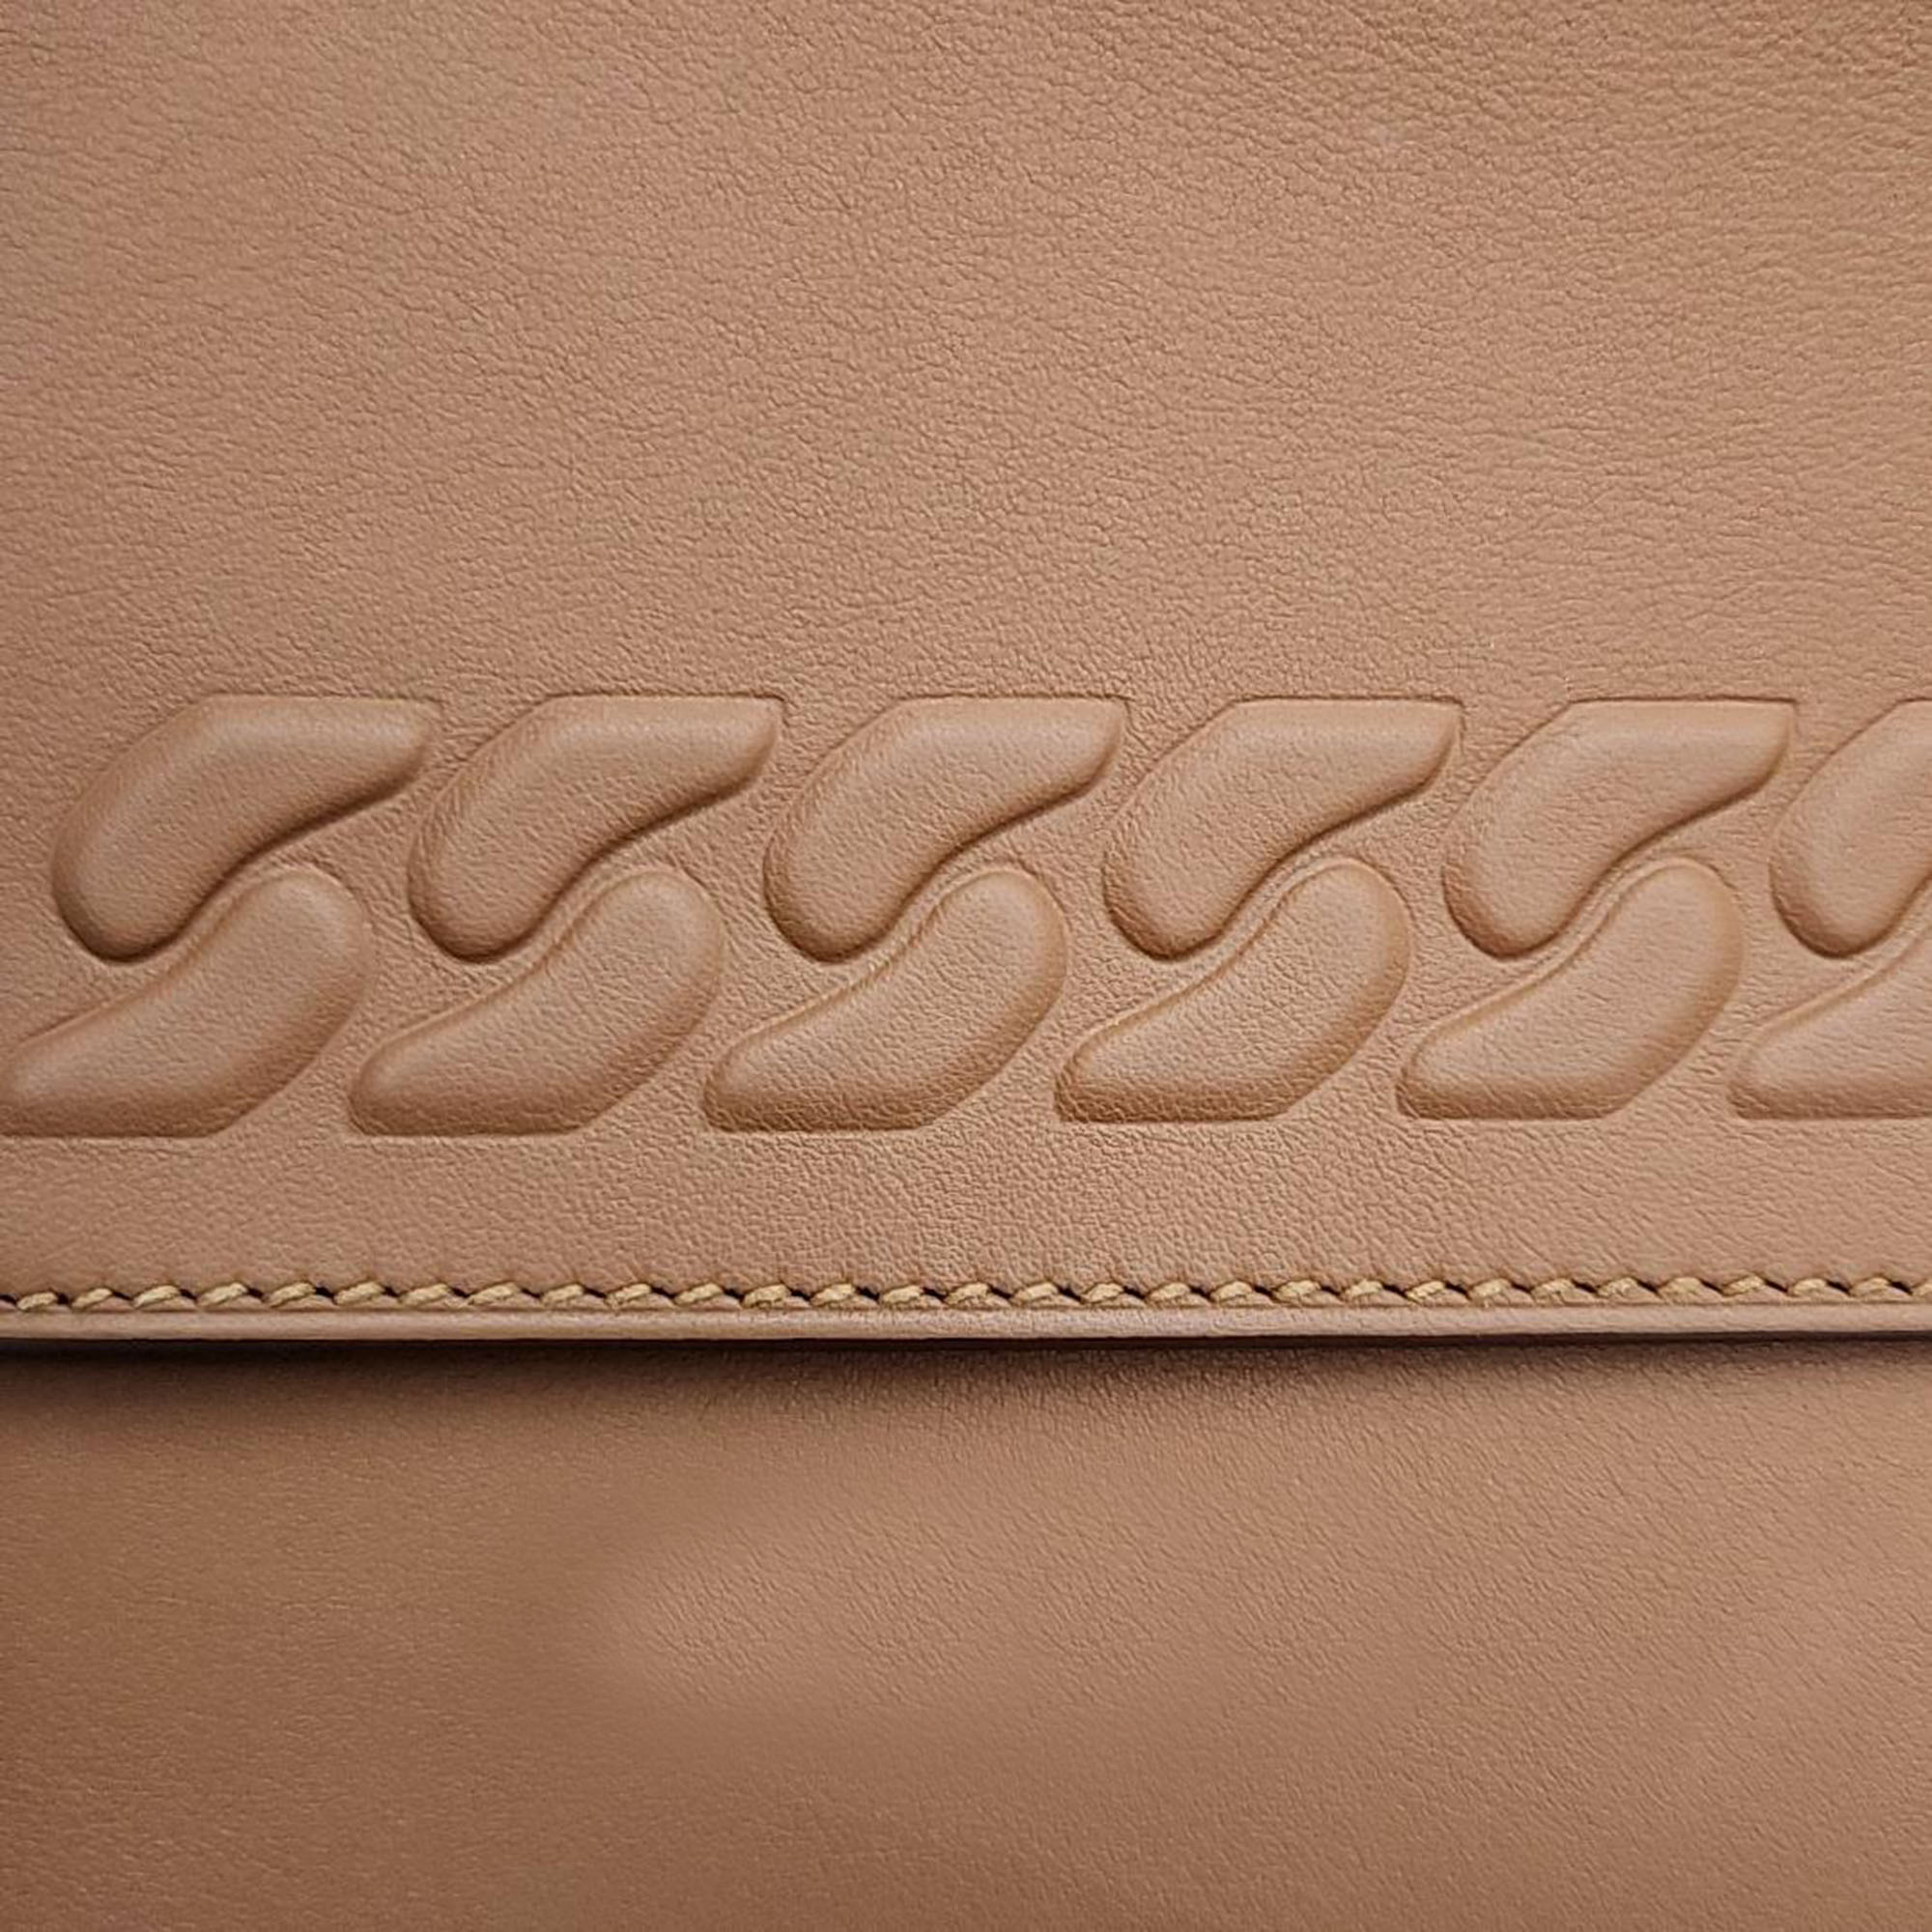 Hermes Brown Leather Boucle Kelly (U) Bag